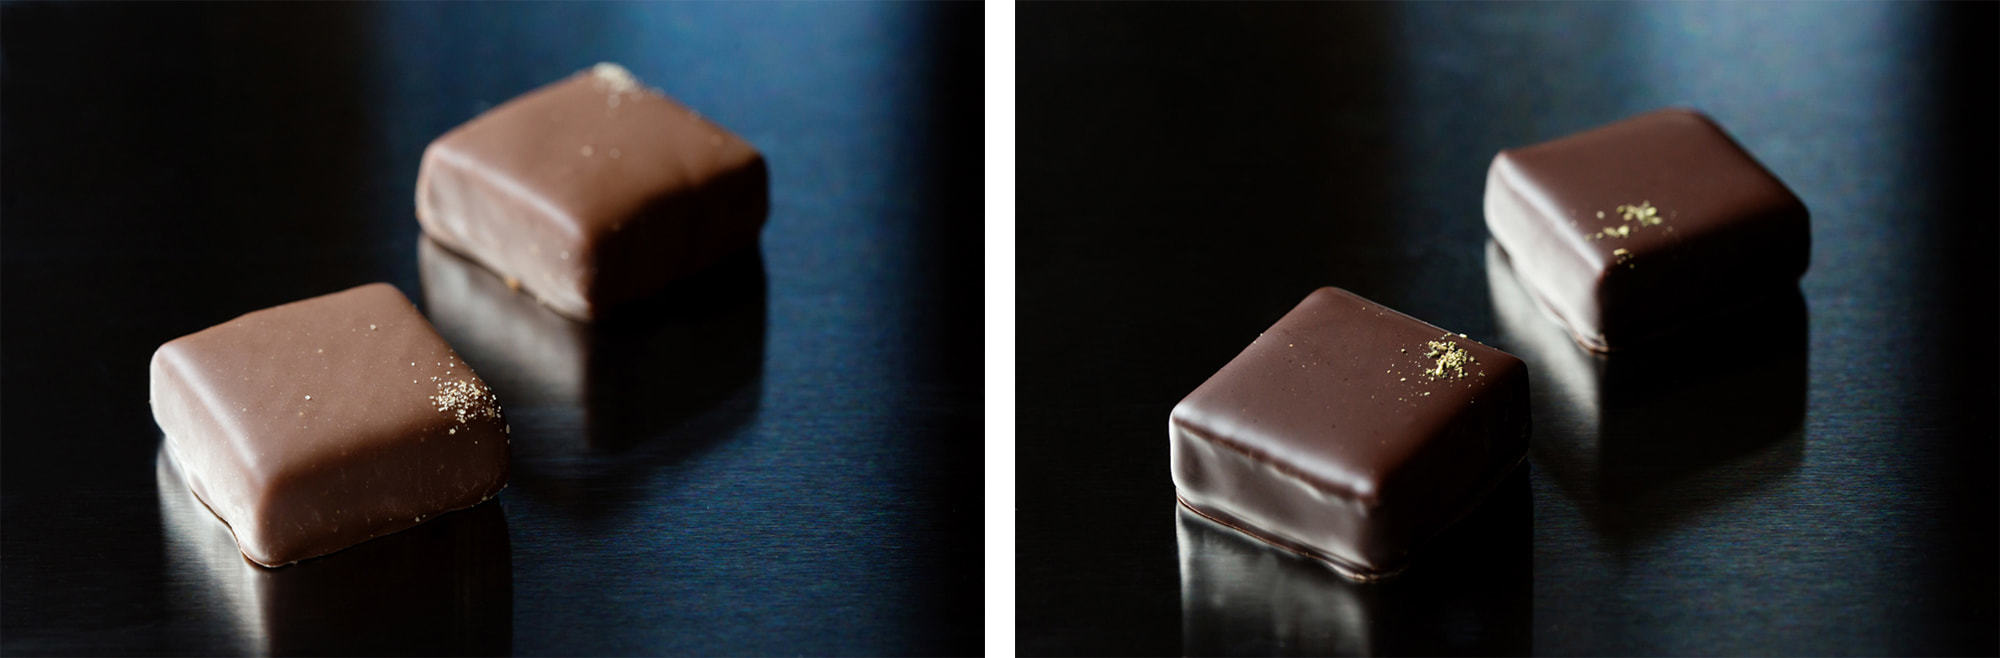 写真左から、ミルクチョコレートに特殊な製法で燻製香をとじこめた「スモーク」とみどりのダイヤと呼ばれるぶどう山椒の清涼感ある風味広がる「ぶどう山椒」。各250円（税別）